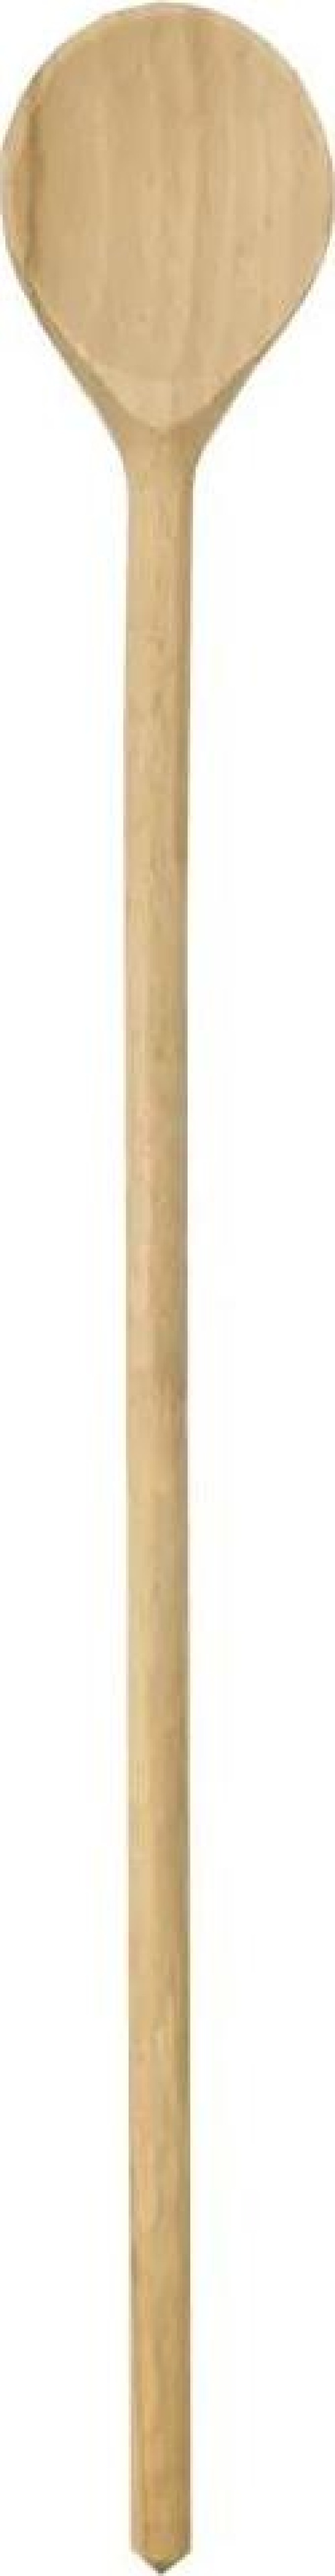 AMADEA Dřevěná vařečka, masivní dřevo, 29 cm